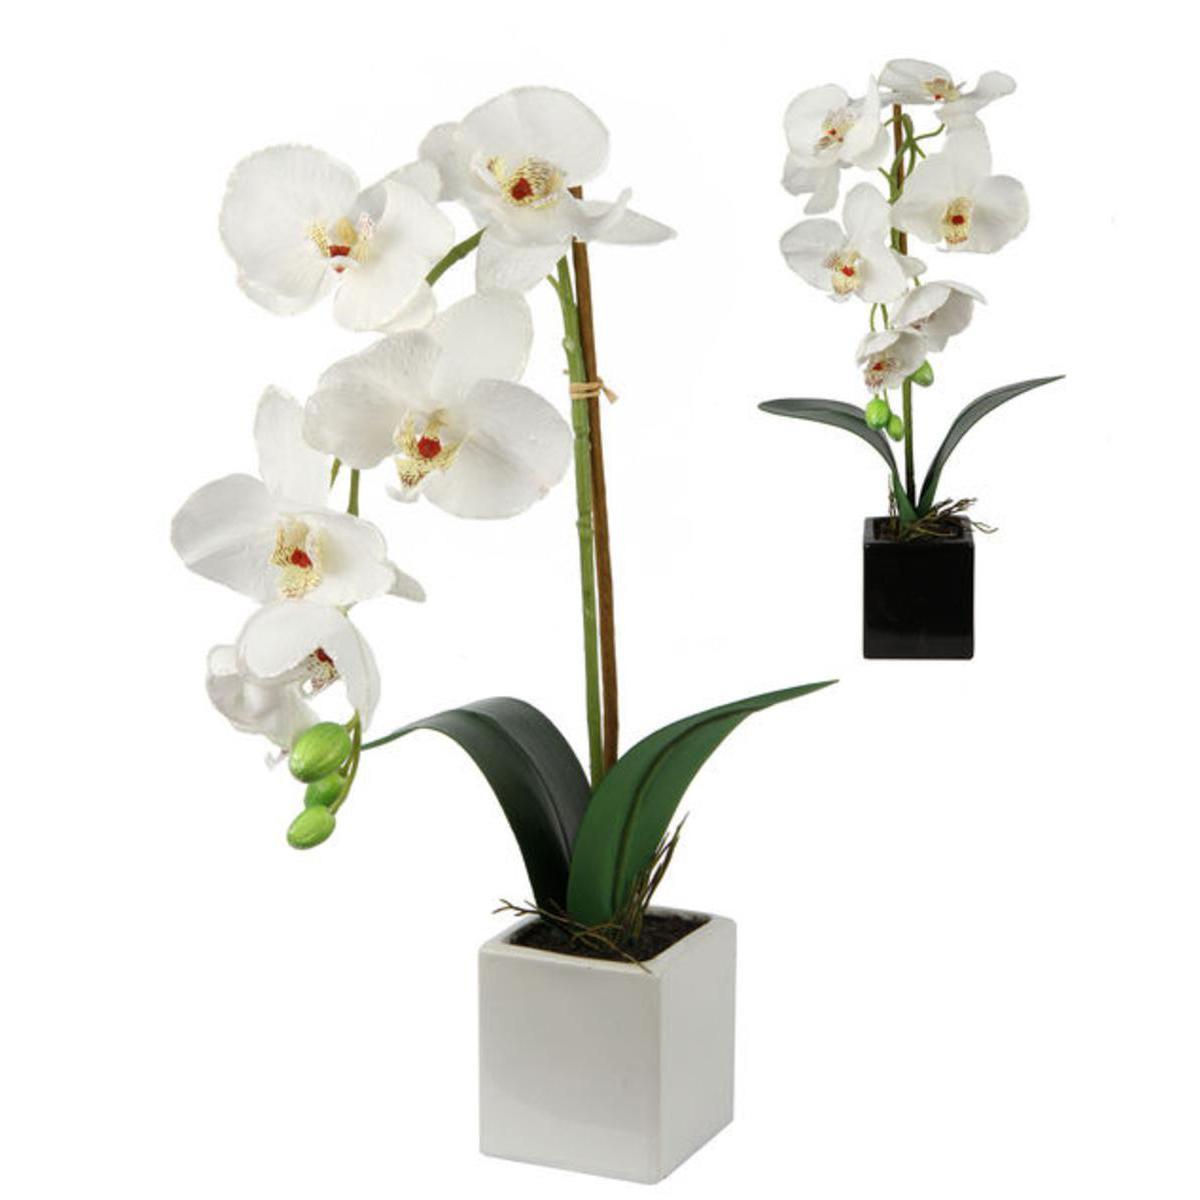 Orchidée en pot bords pailleté - Plastique, Polyester, Céramique - Diamètre 7,5 x 36 cm - Blanc